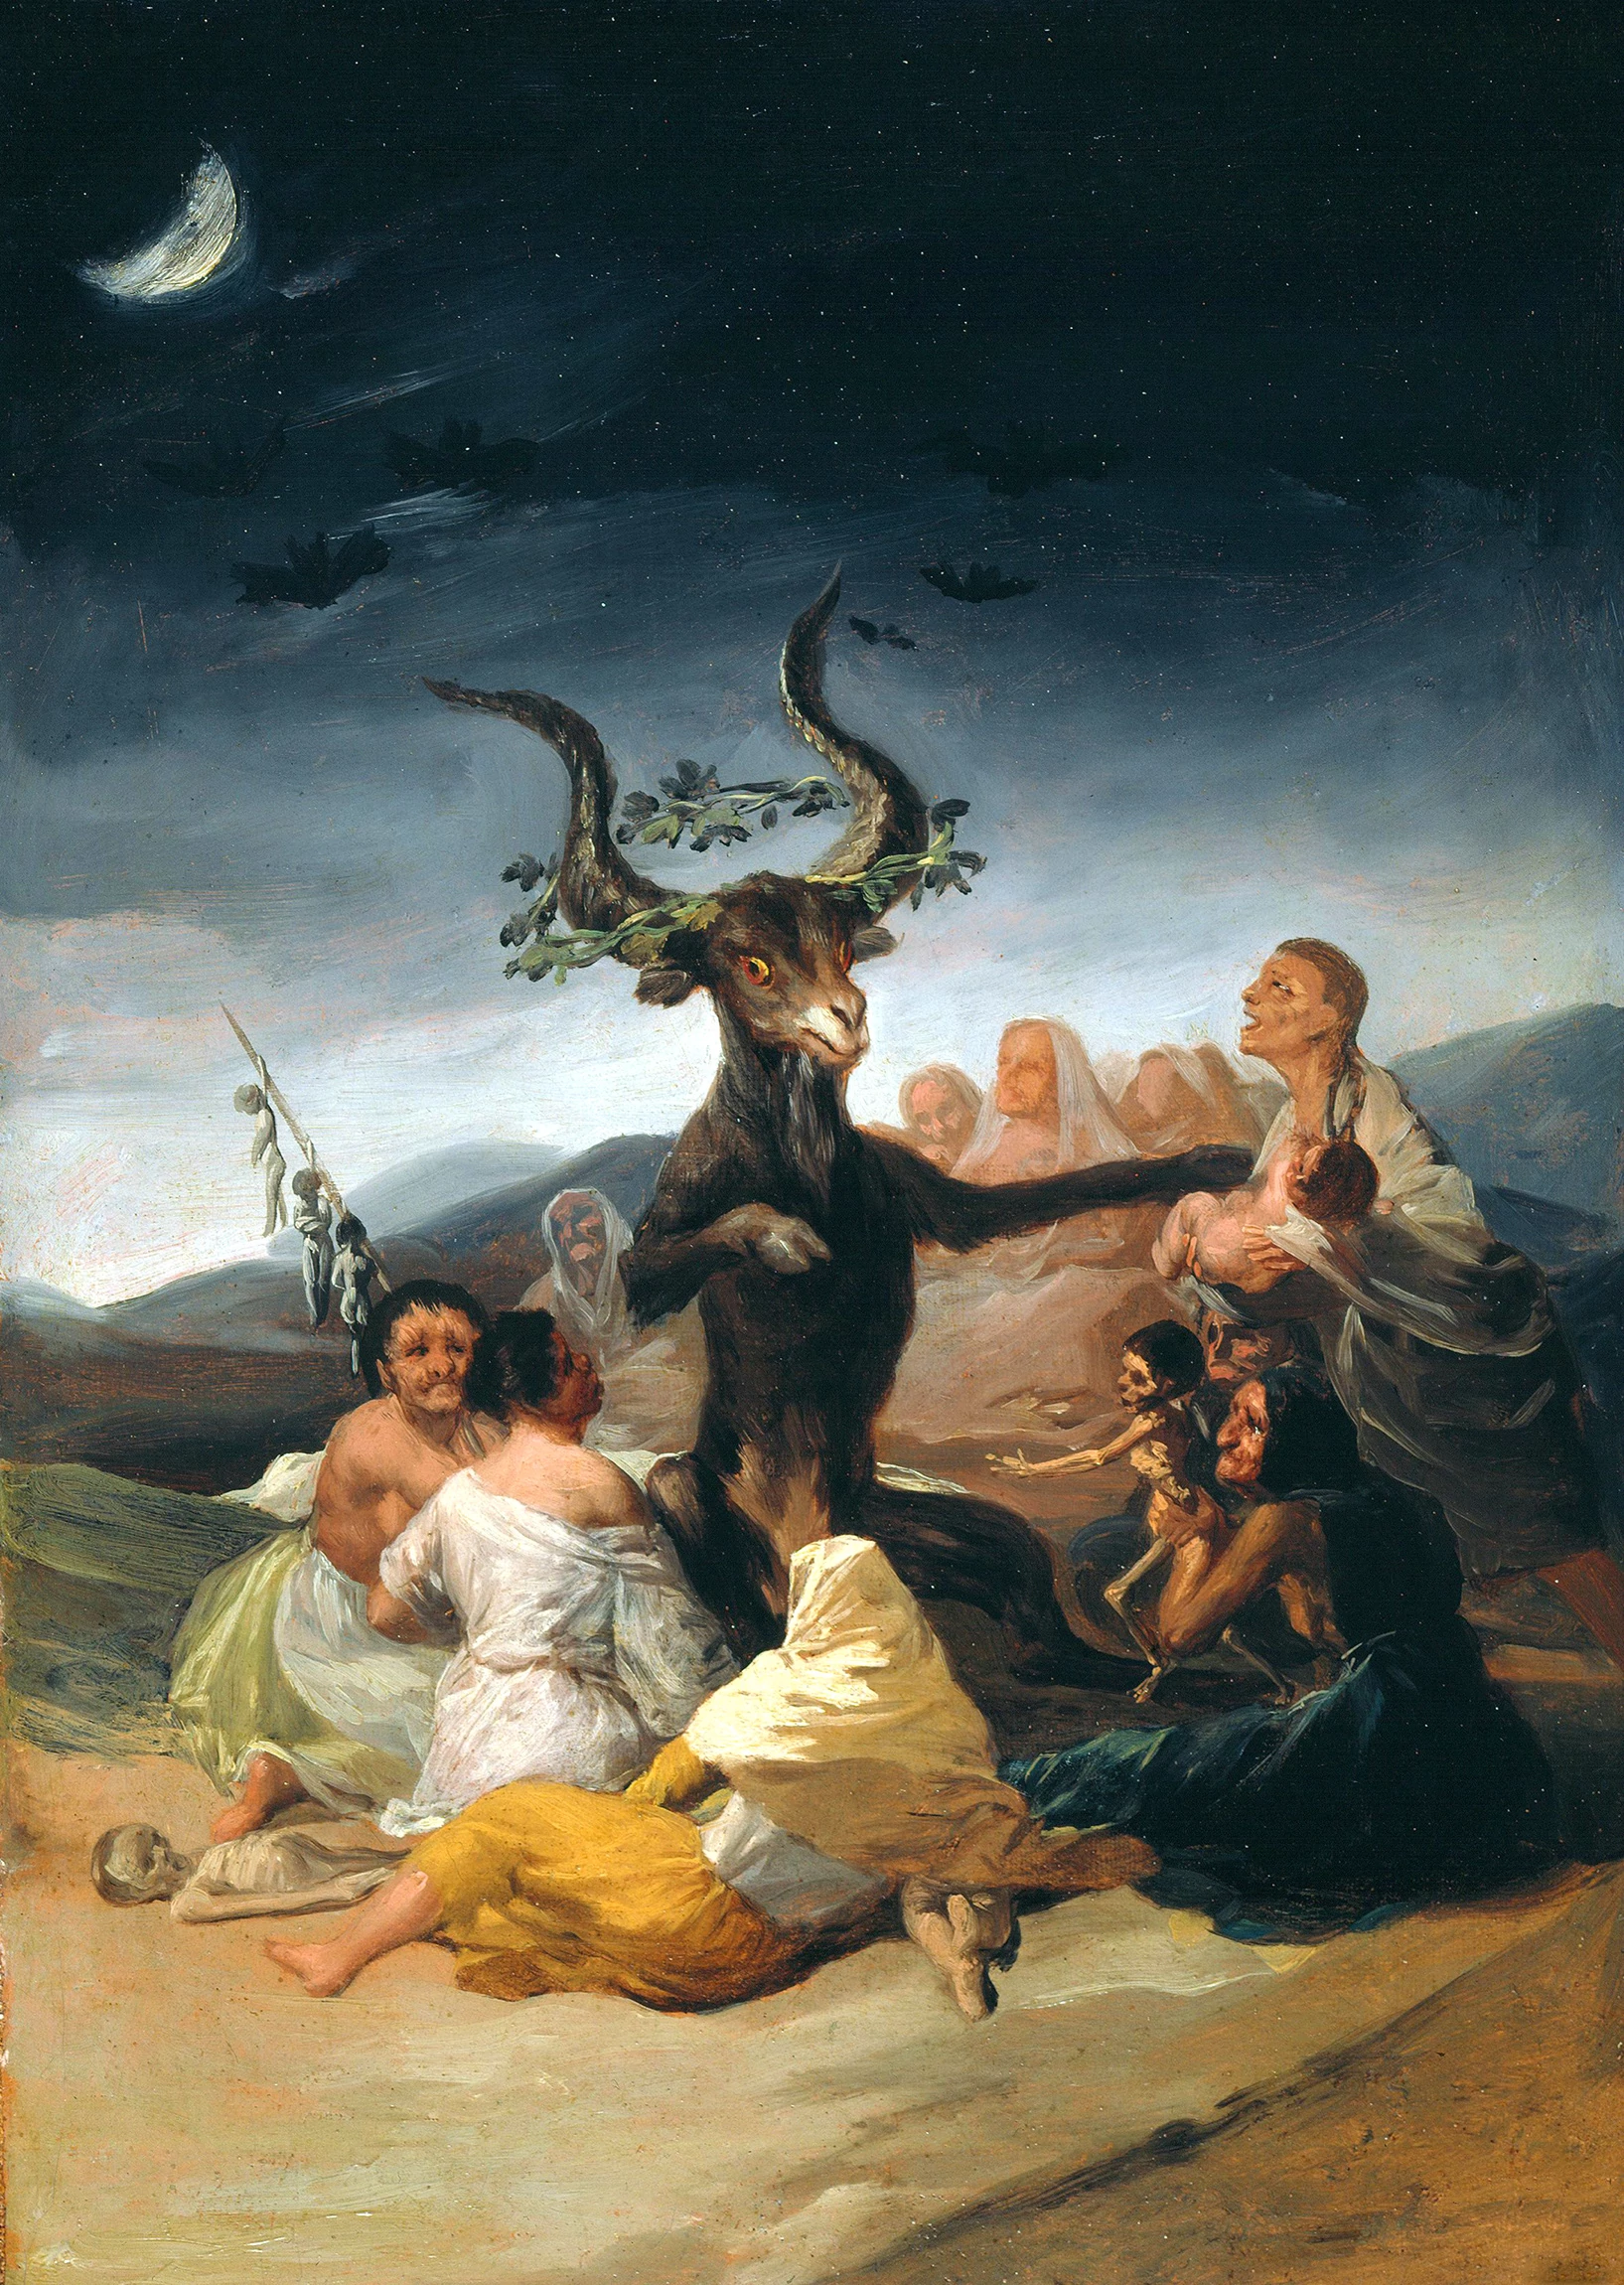 Francisco de Goya y Lucientes, The Artists